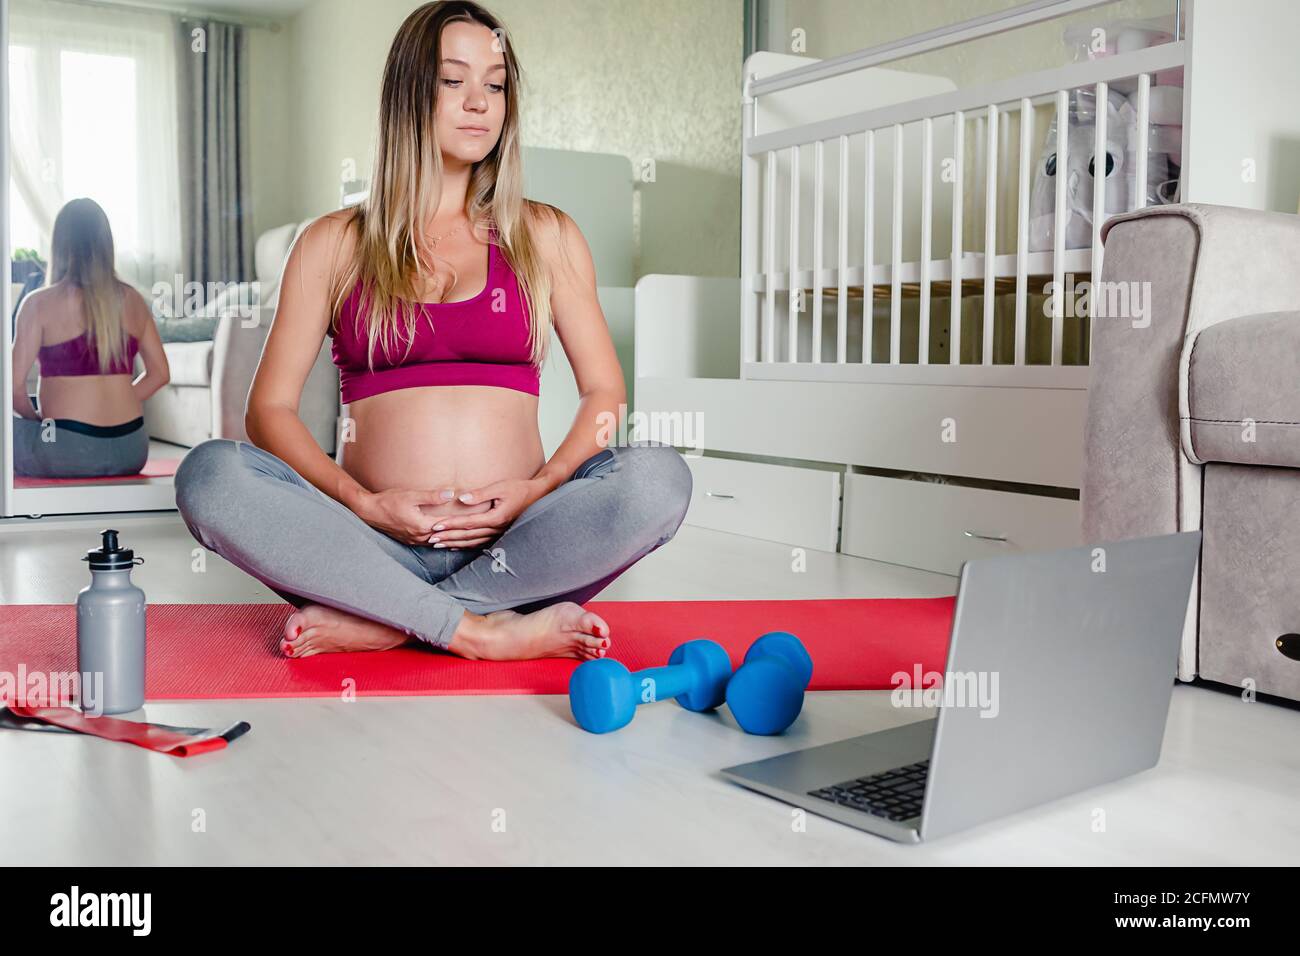 portrait de jeune femme enceinte caucasienne assis sur un tapis de yoga regardant l'entraînement tutorial à la maison, copier l'espace. Grossesse en santé. Banque D'Images